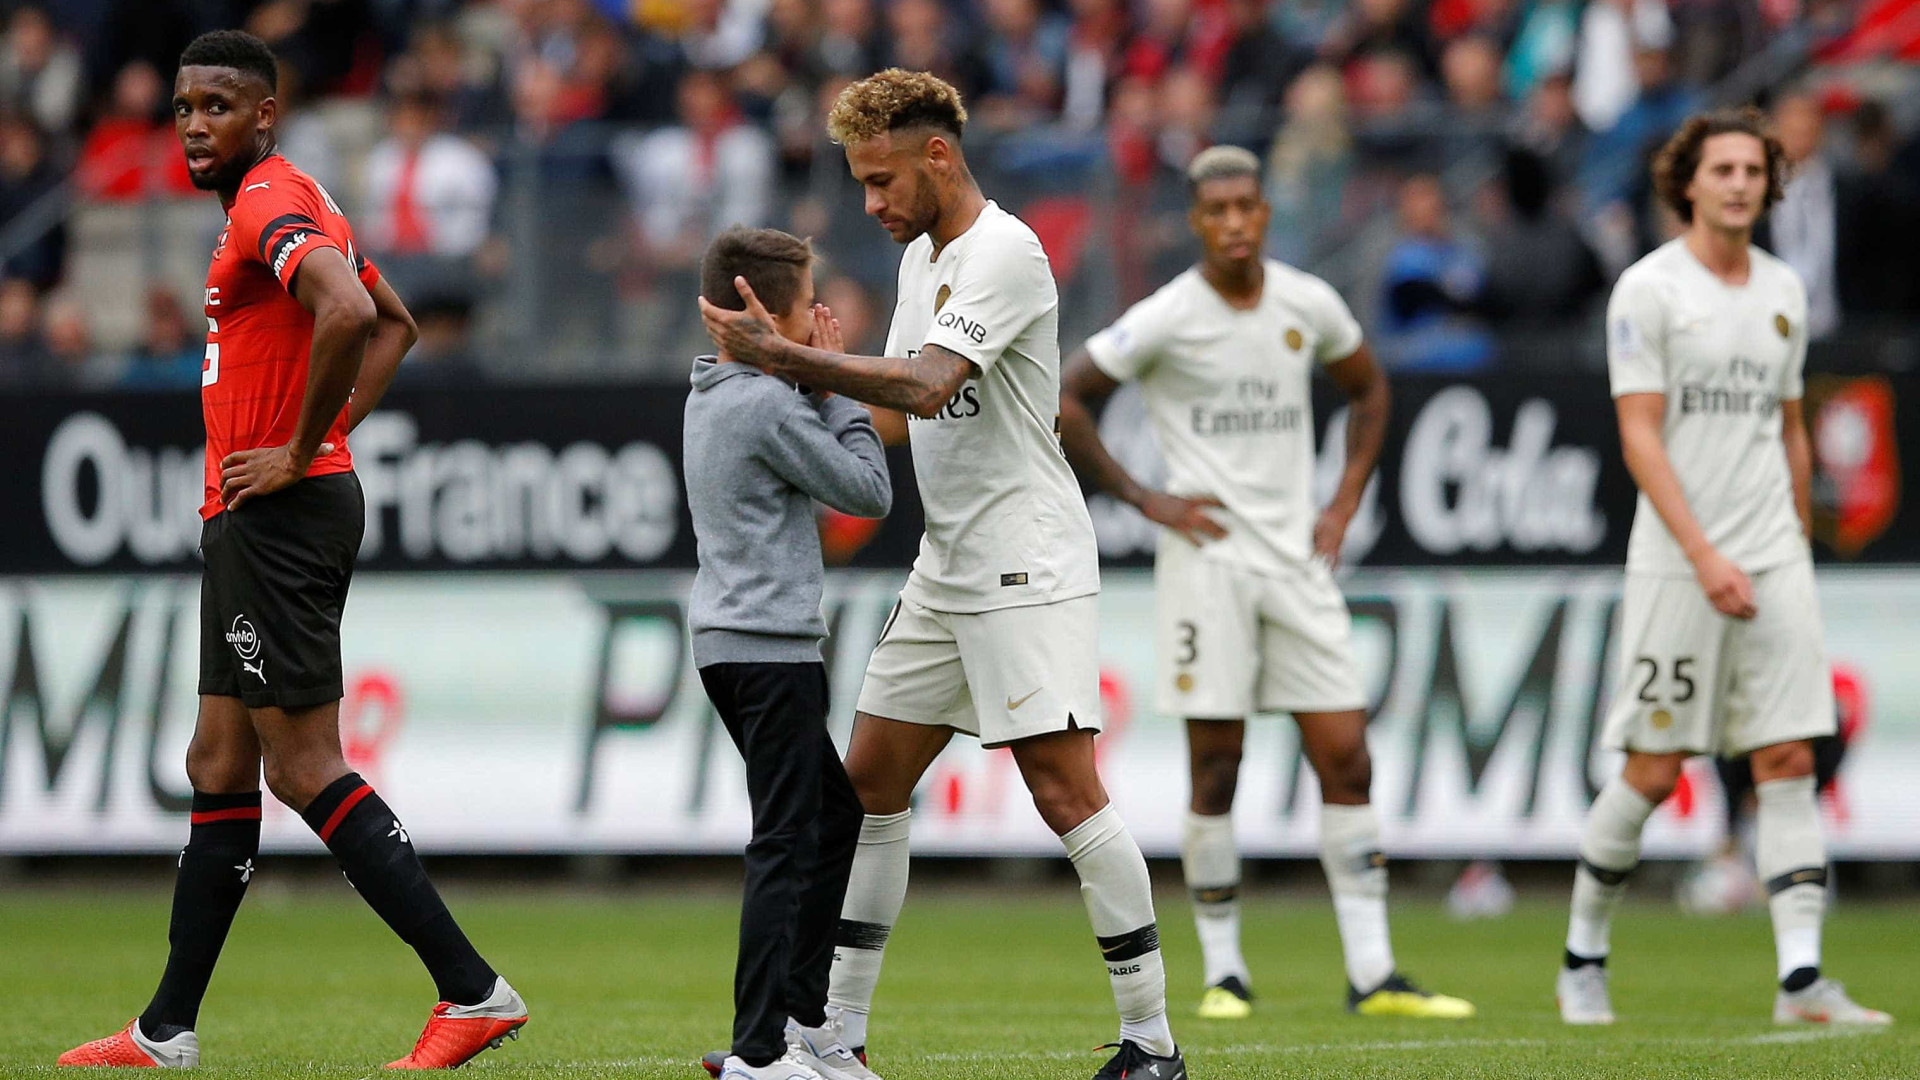 Garoto invade campo, abraça Neymar e ganha camisa do craque; vídeo